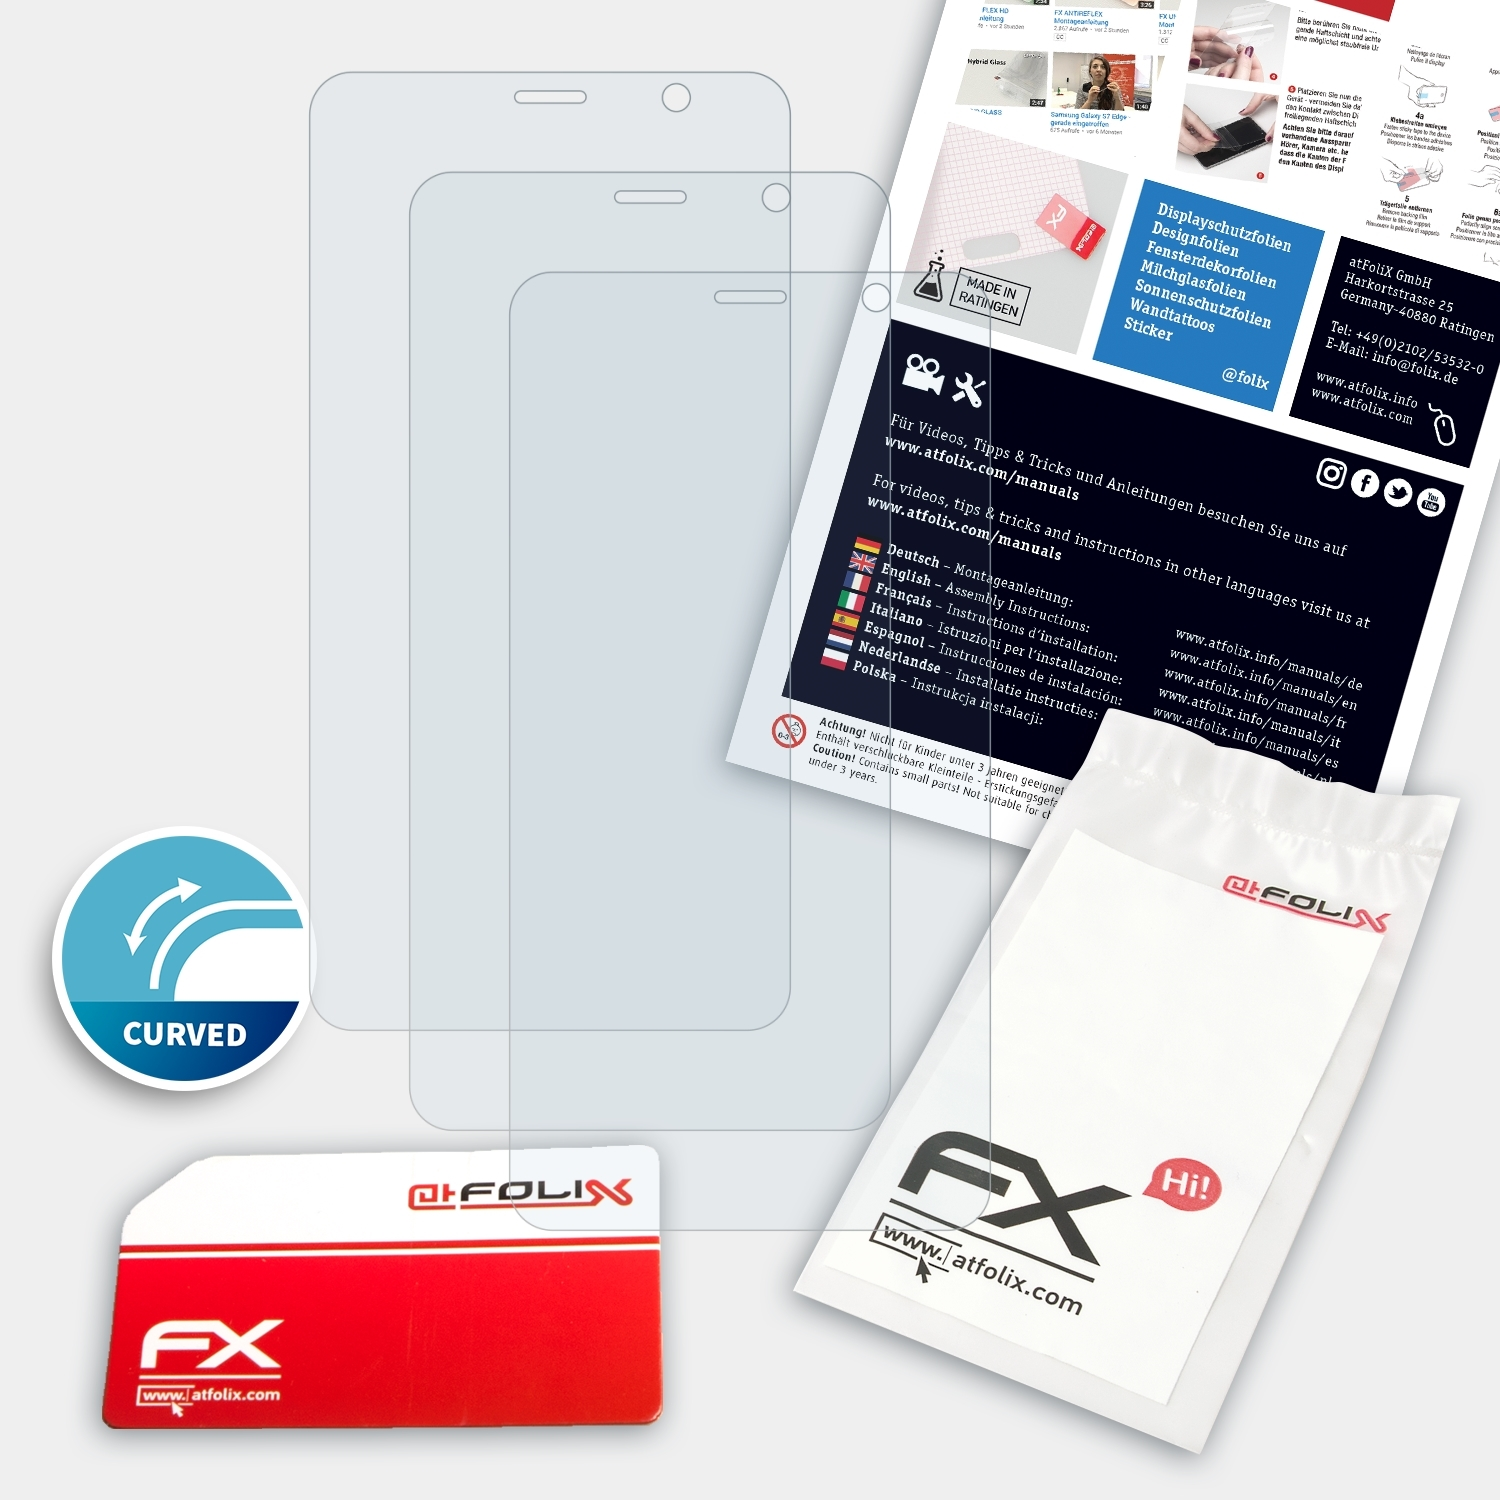 ATFOLIX 3x FX-ActiFleX Energy Energizer Displayschutz(für E500S)